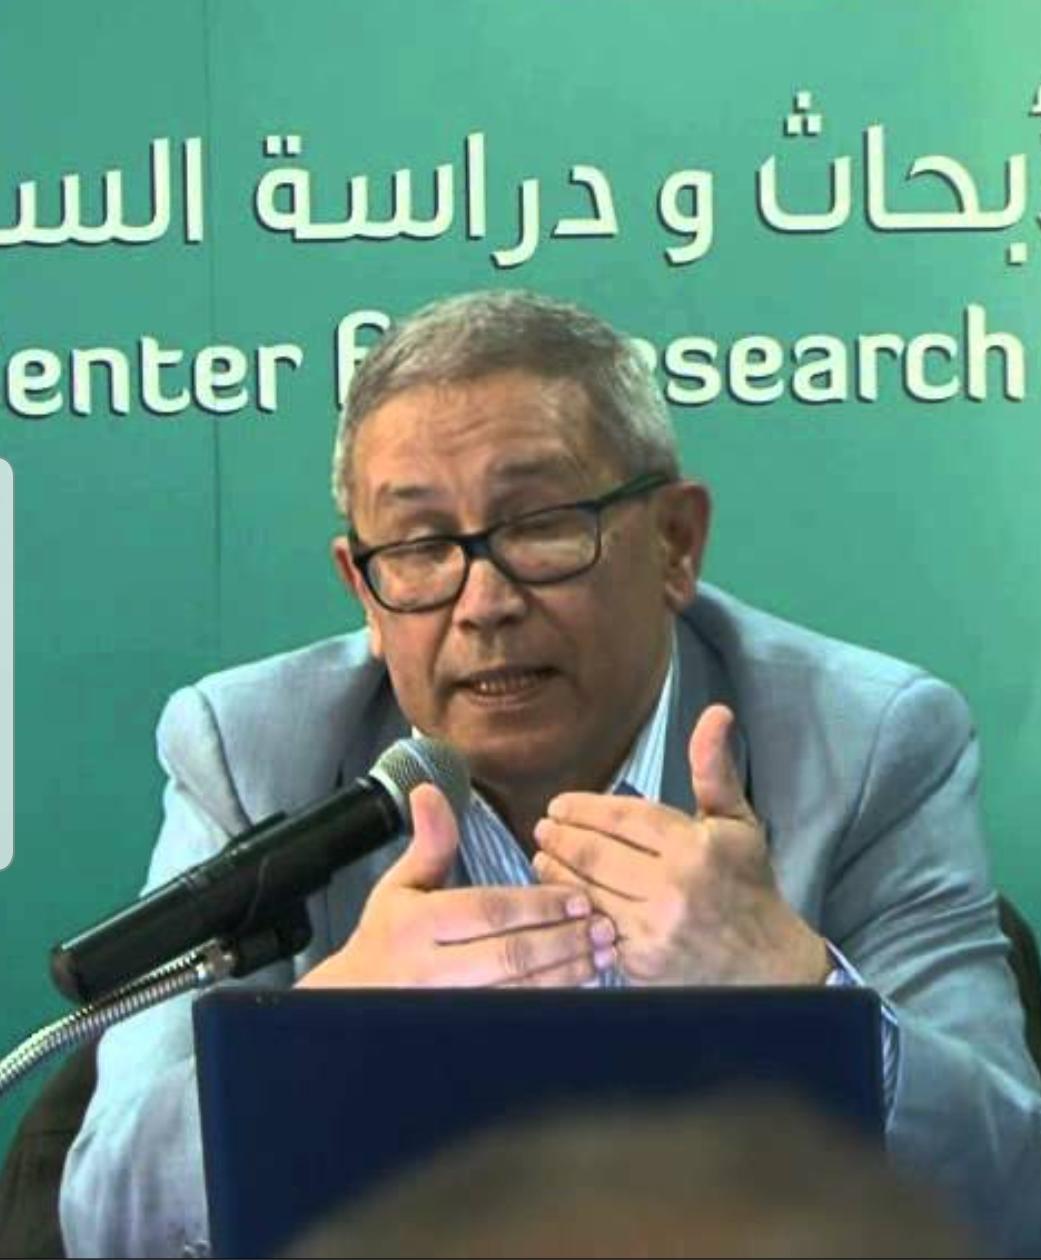 عبد الإله التهاني يستضيف المفكر المغربي الدكتور محمد المصباحي في برنامج “مدارات”